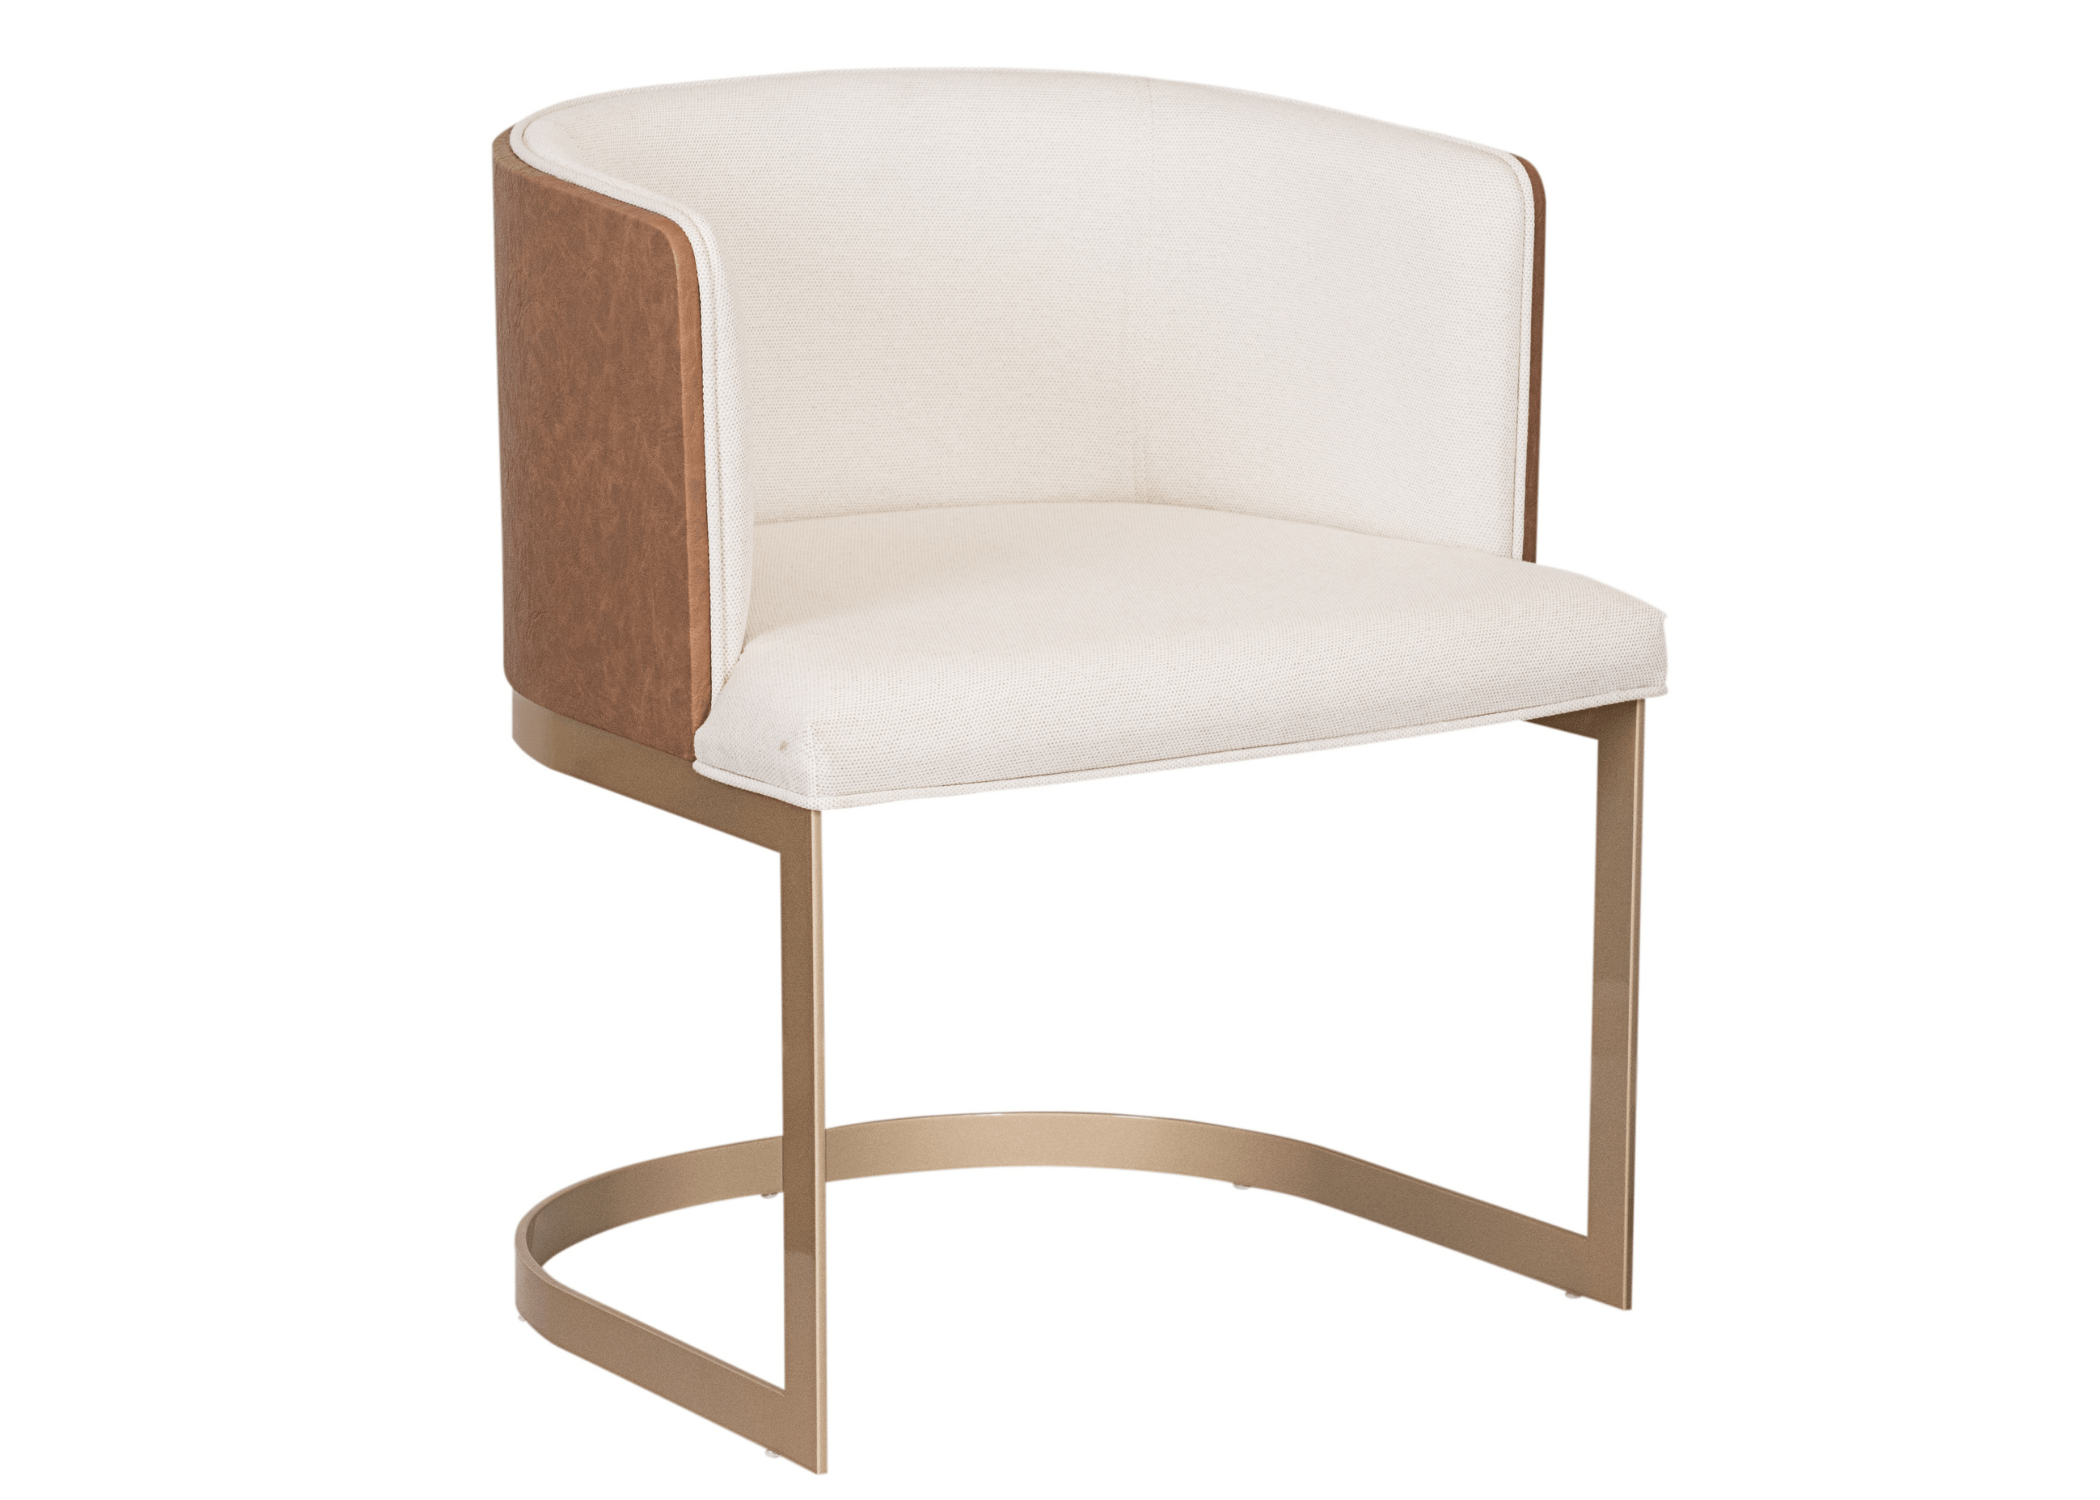 Cadeira Naya Envelopada com design envolvente e base de aço, ideal para ambientes modernos.